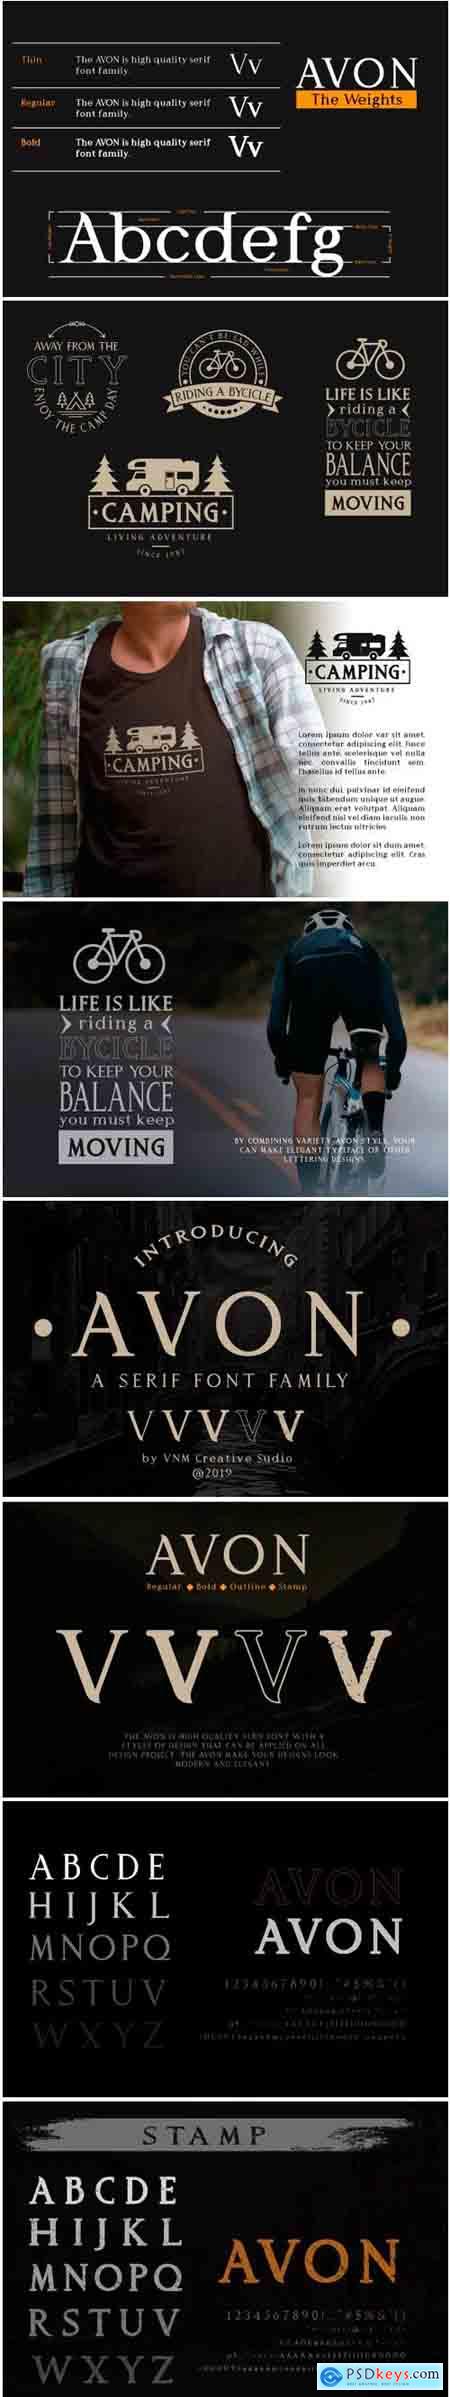 Avon Font